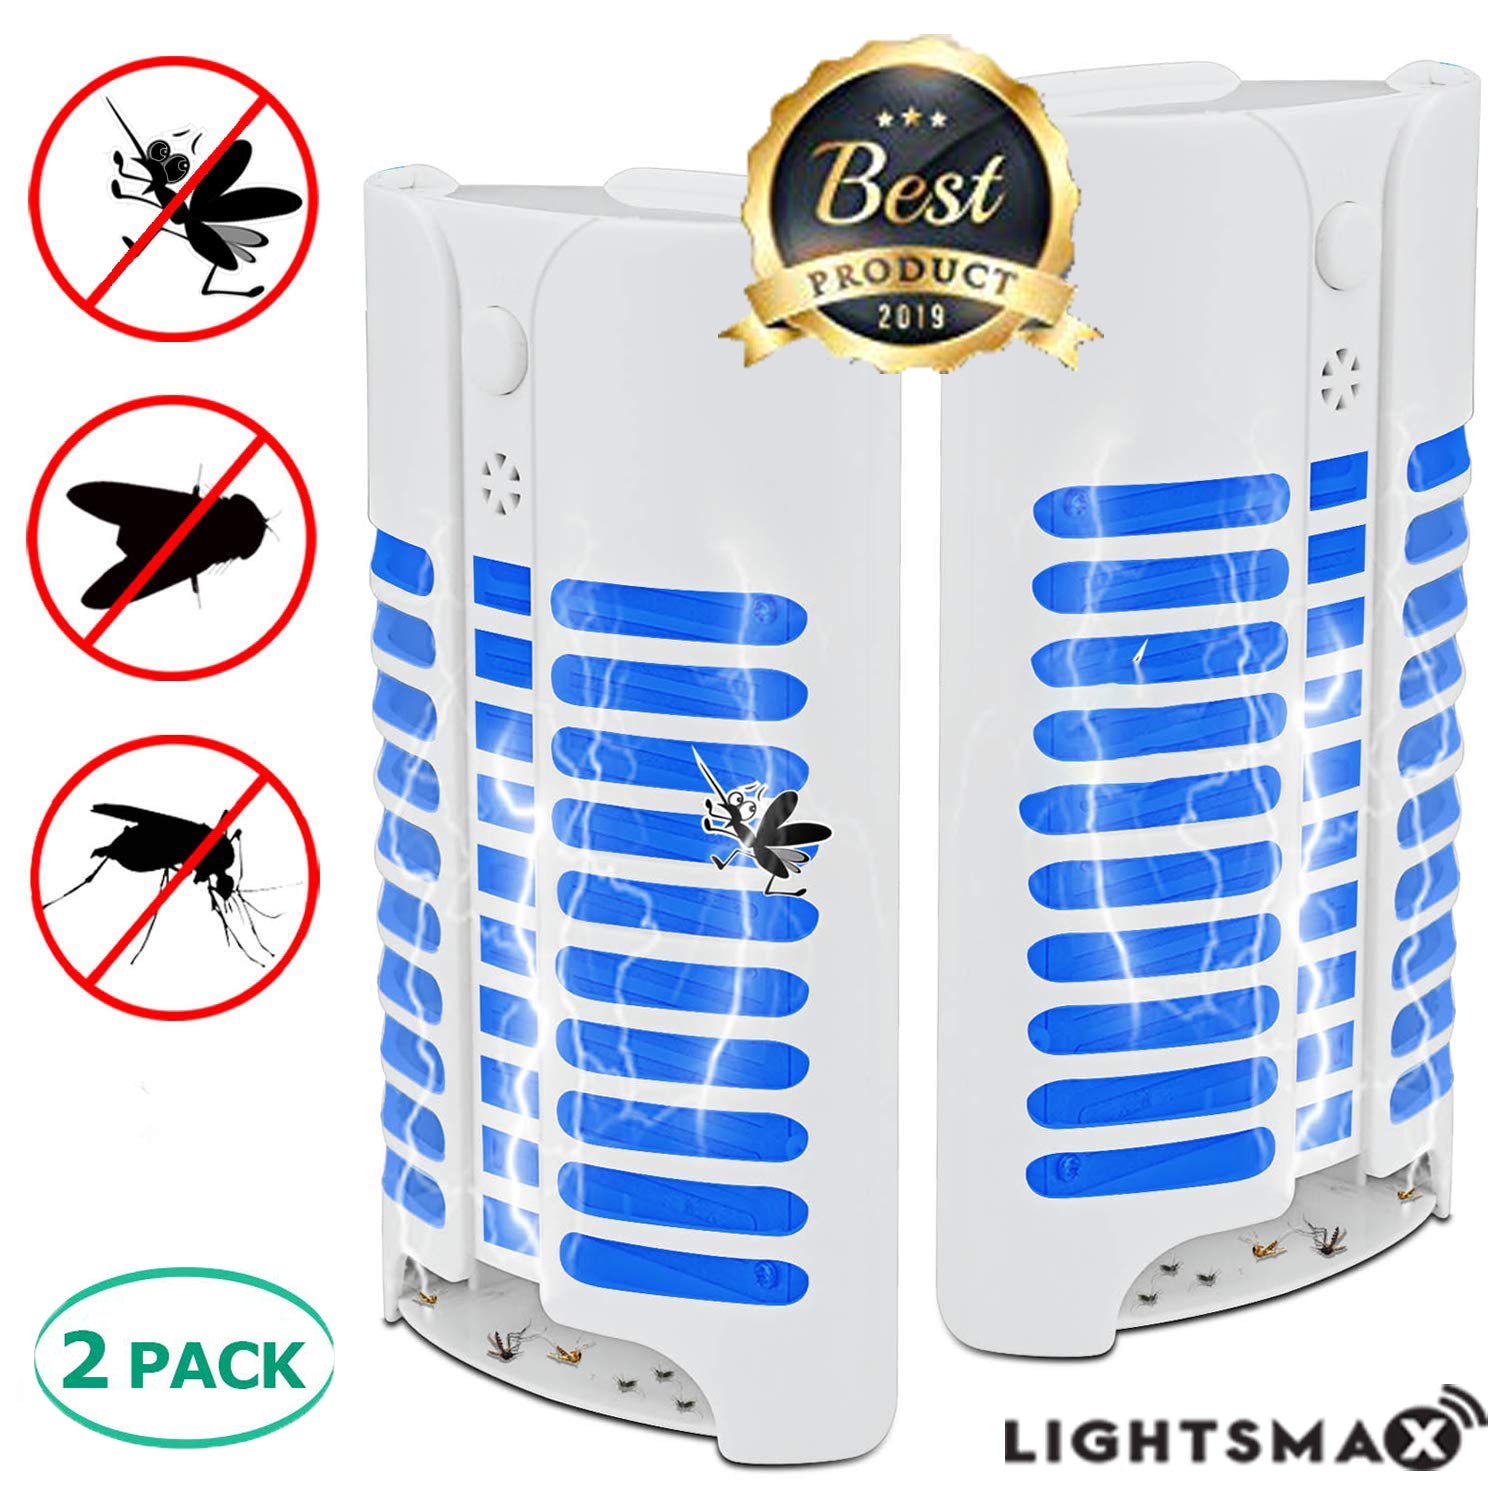 LIGHTSMAX Bug Zapper, Mosquito Zapper Indoor Plug in Night Light-2